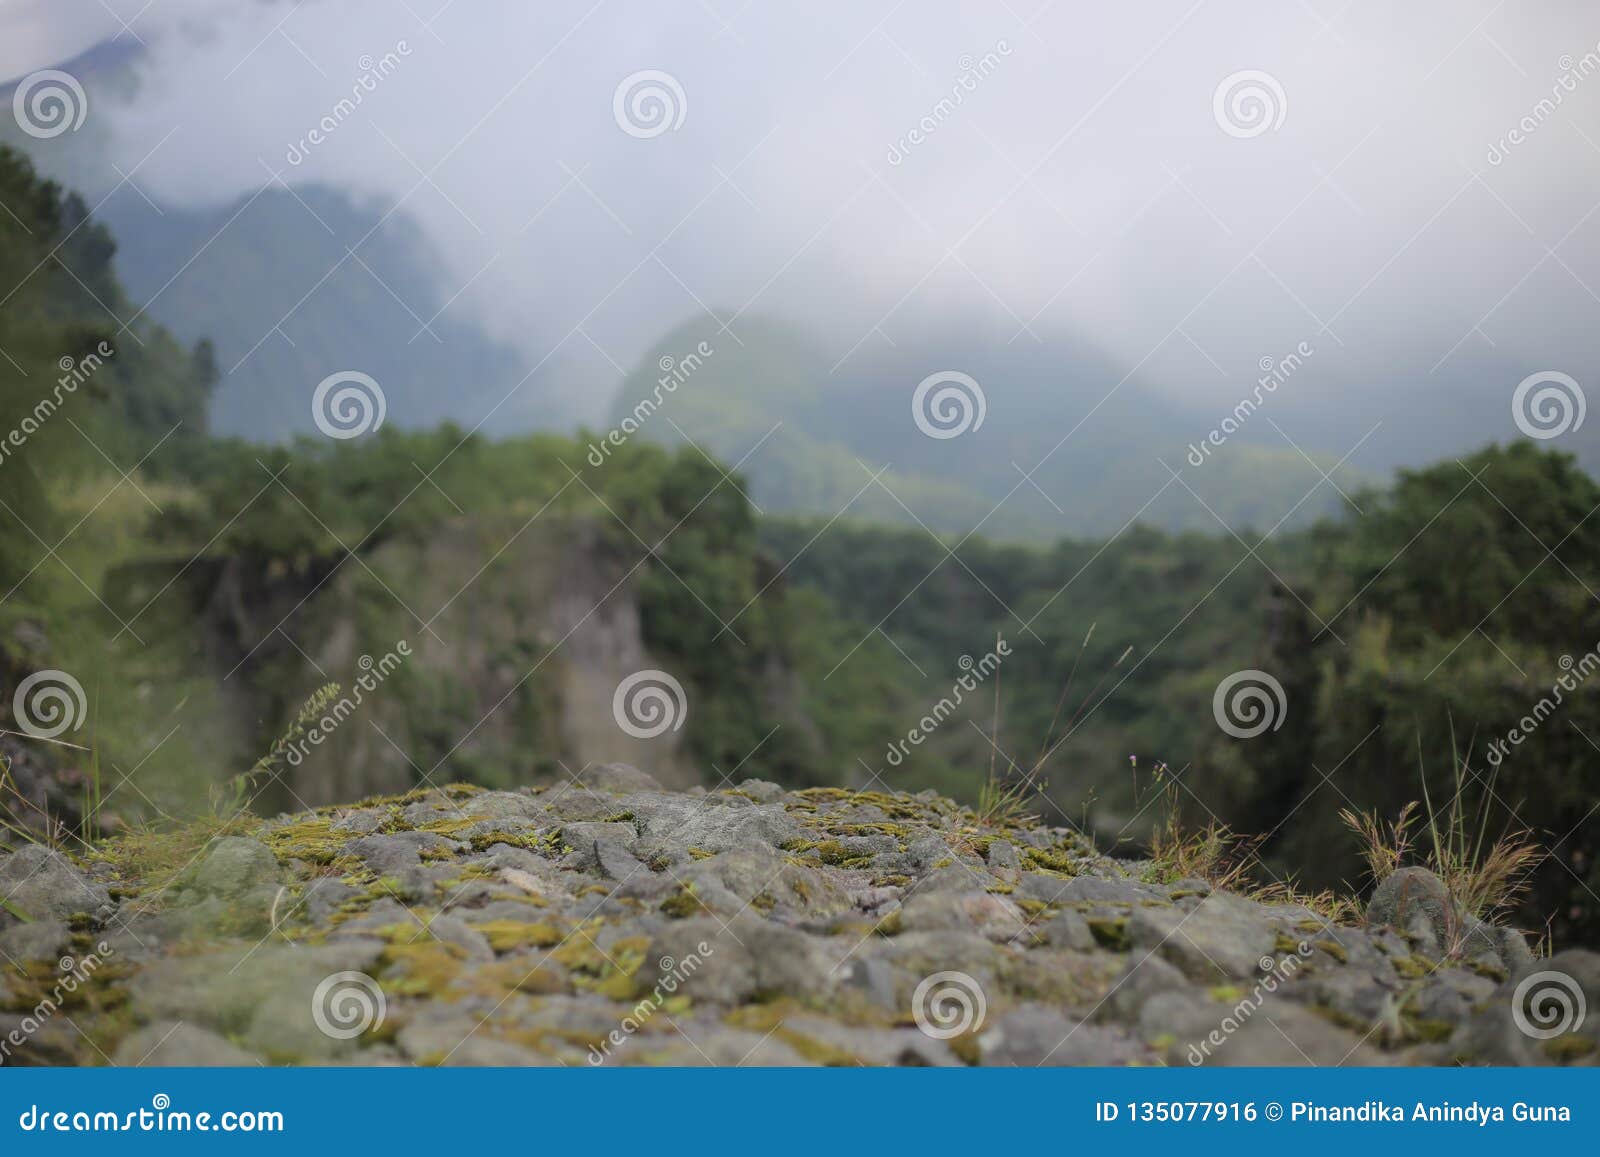 valley background merapi mountain